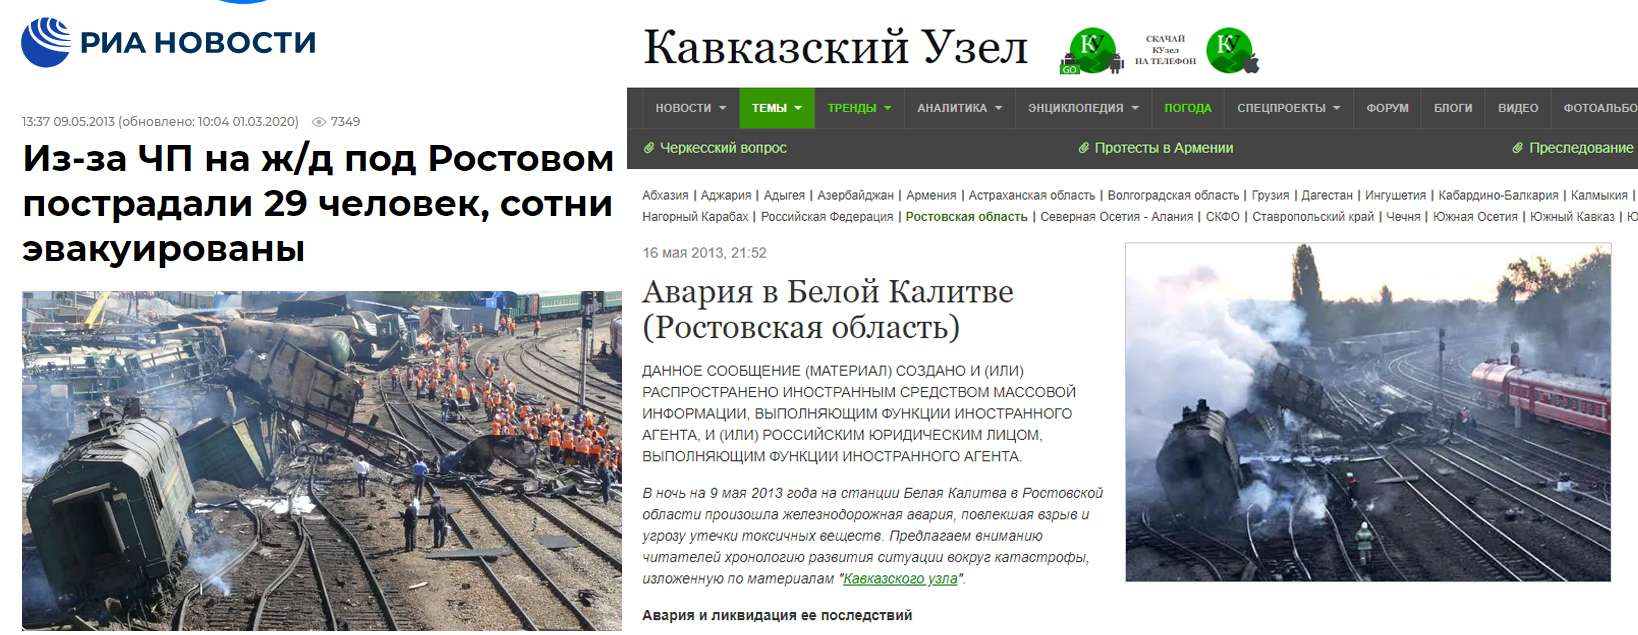 Artykuły o wypadku kolejowym w obwodzie rostowskim opublikowane w maju 2013 roku. 